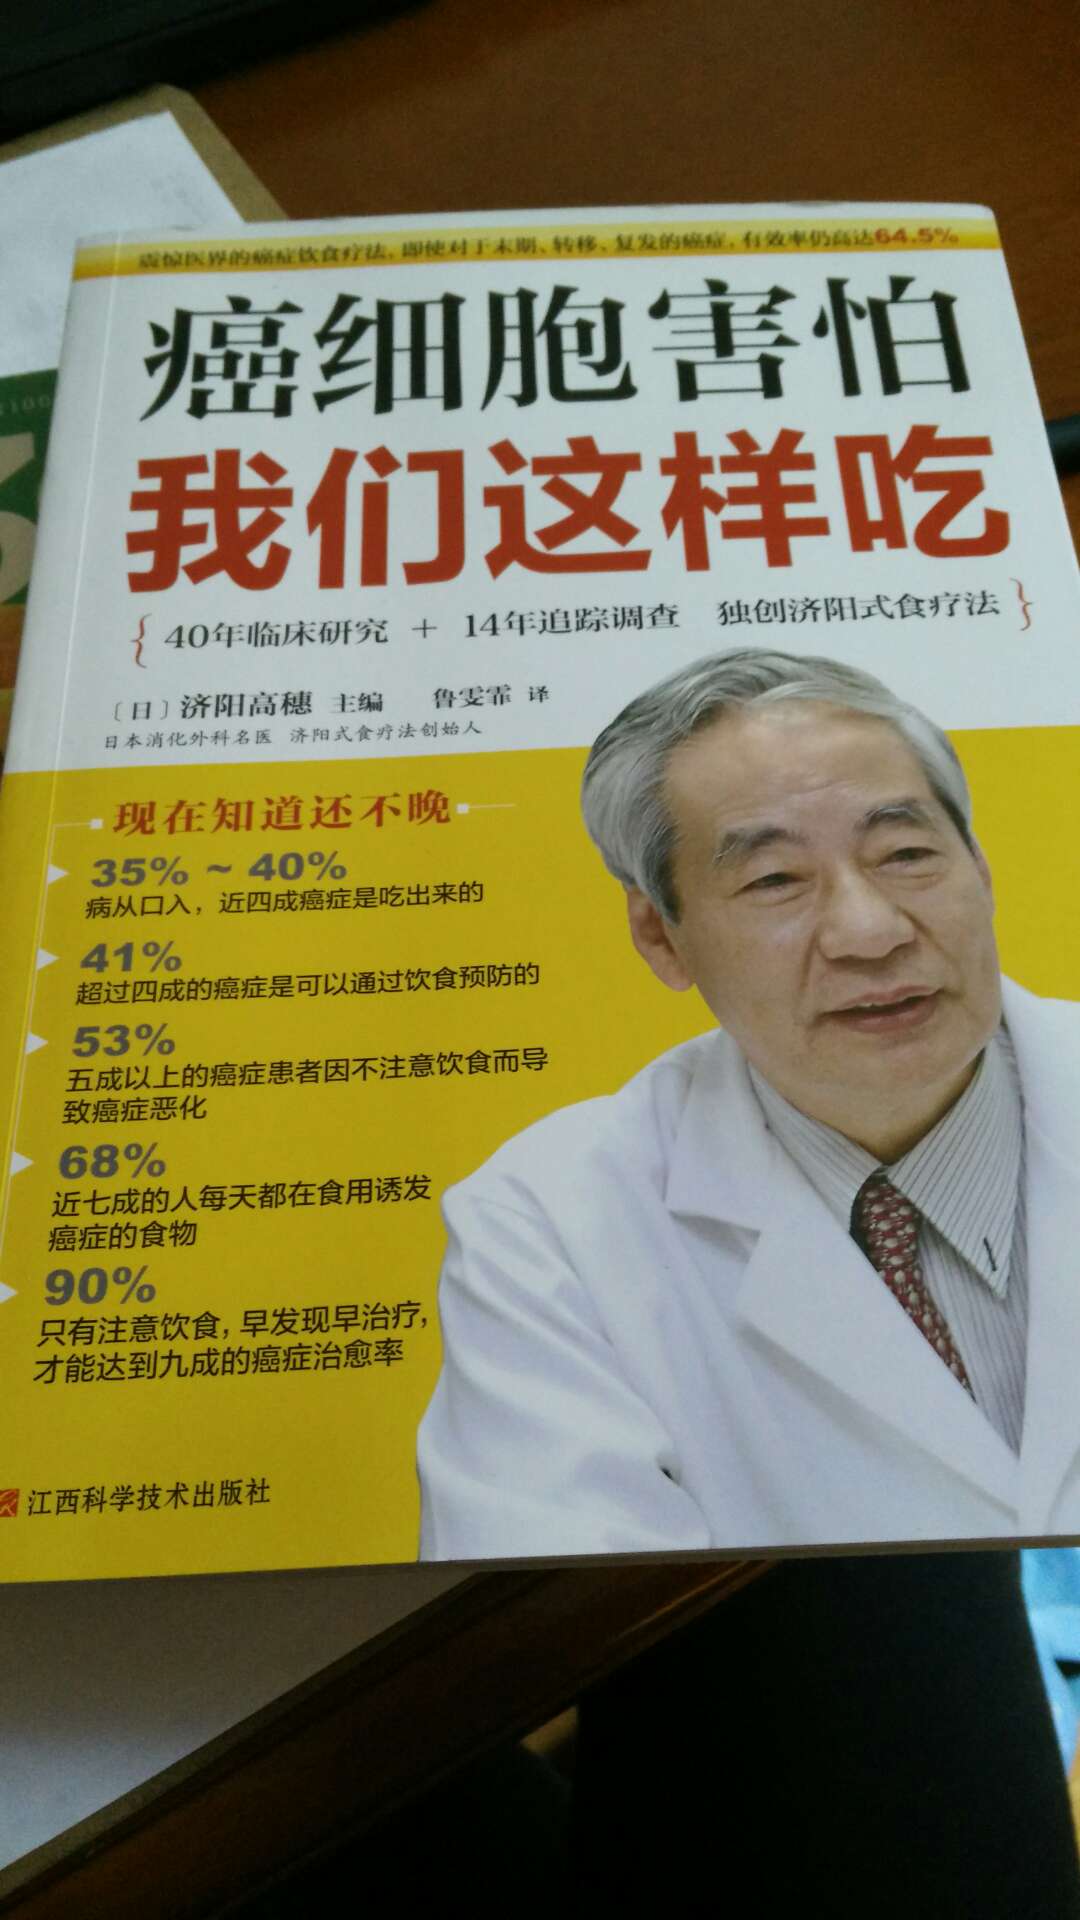 虽然是日本人写的，不太适用于中国，但是里面的一些理论知识还有方法，我们是可以借鉴的。书中不仅介绍了很多关于抗癌的食物，还写了是抗癌的食谱。还是挺不错的一本书，推荐大家购买。